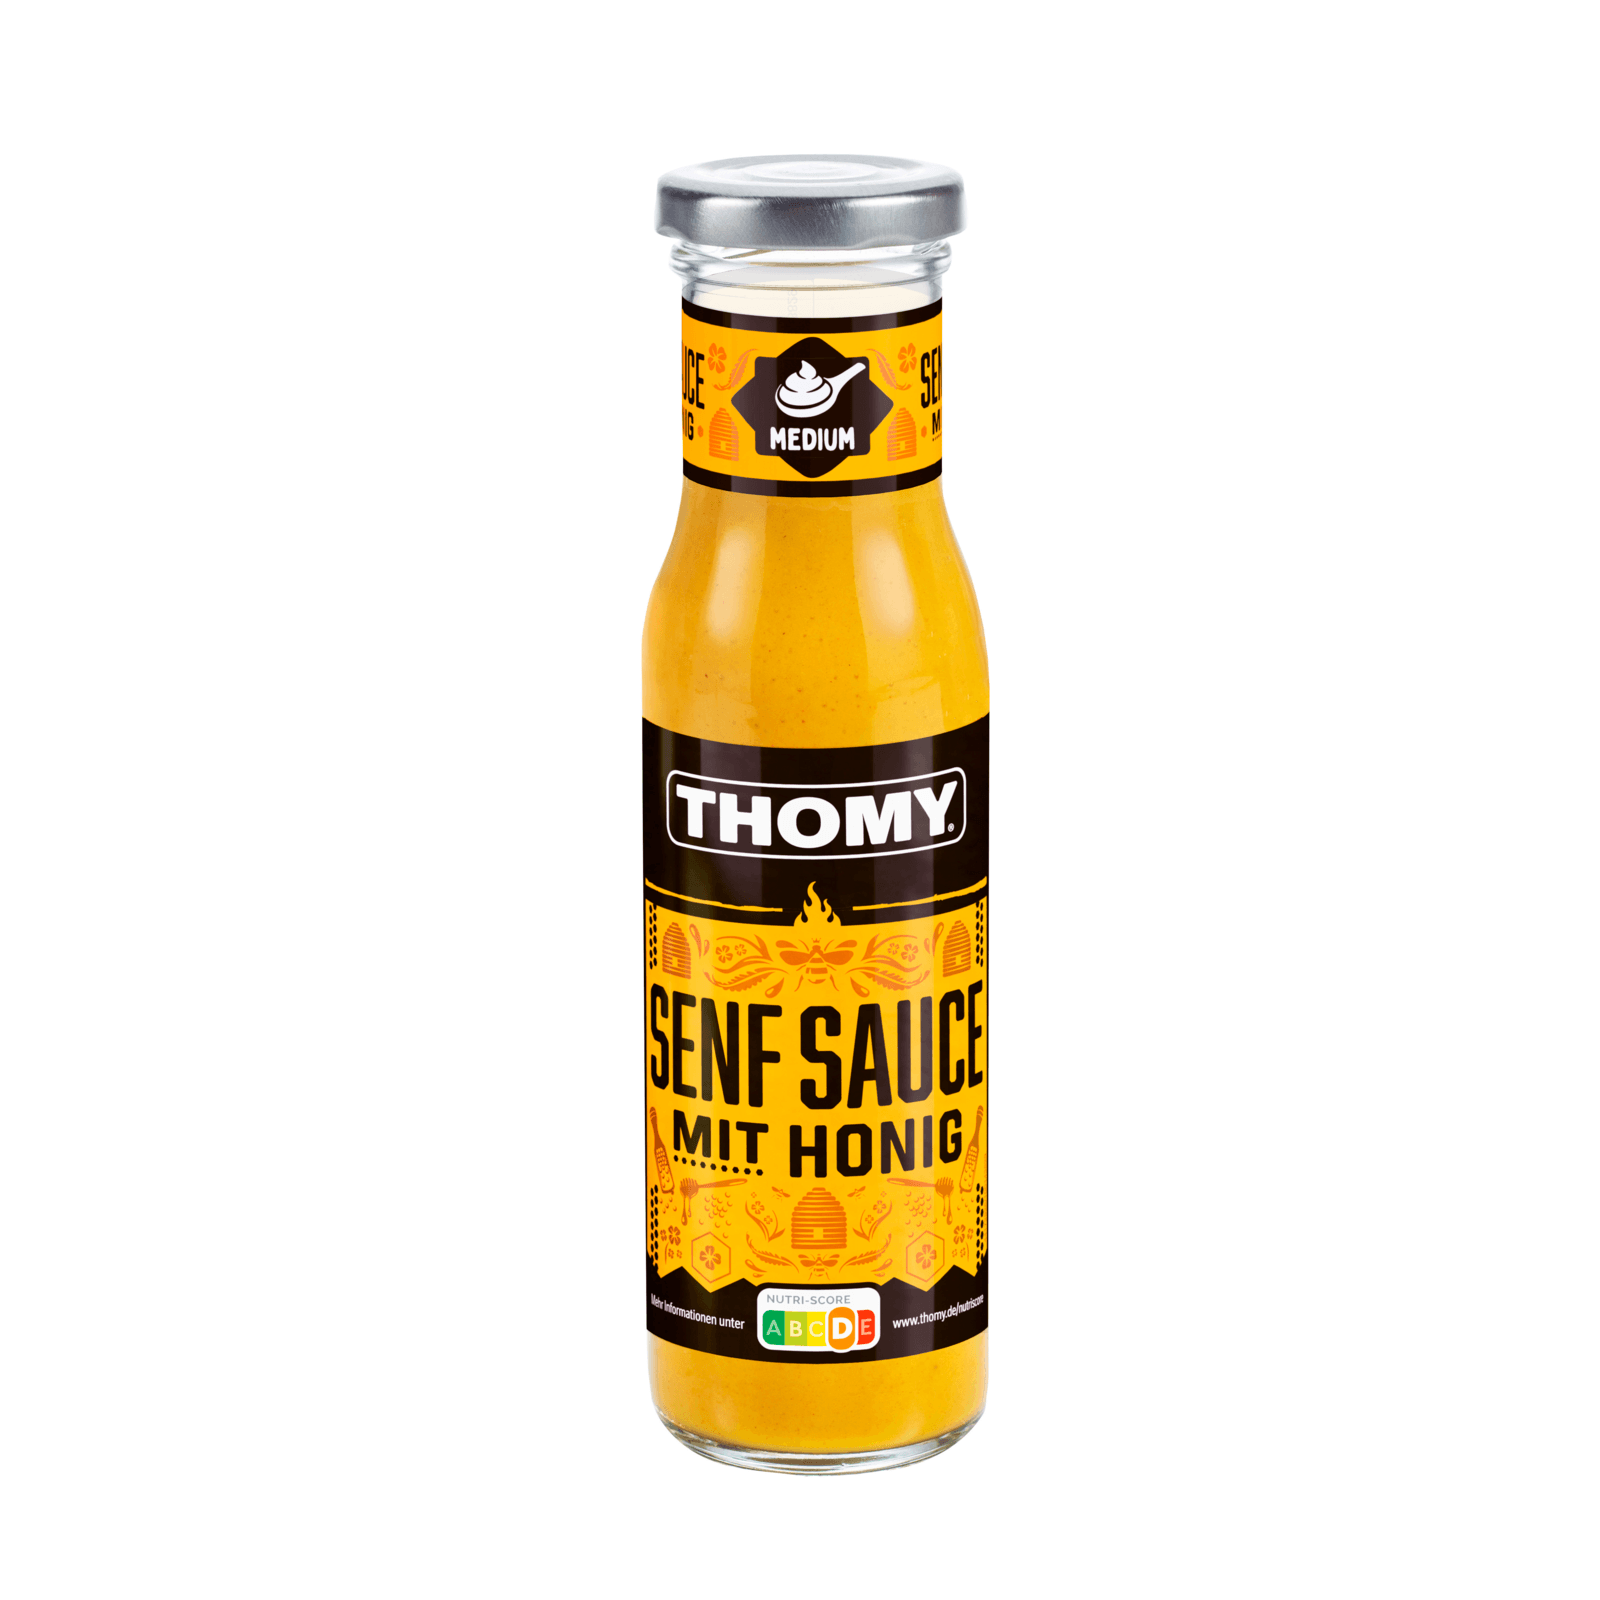 Thomy Senf Sauce mit Honig 230ml bei REWE online bestellen!